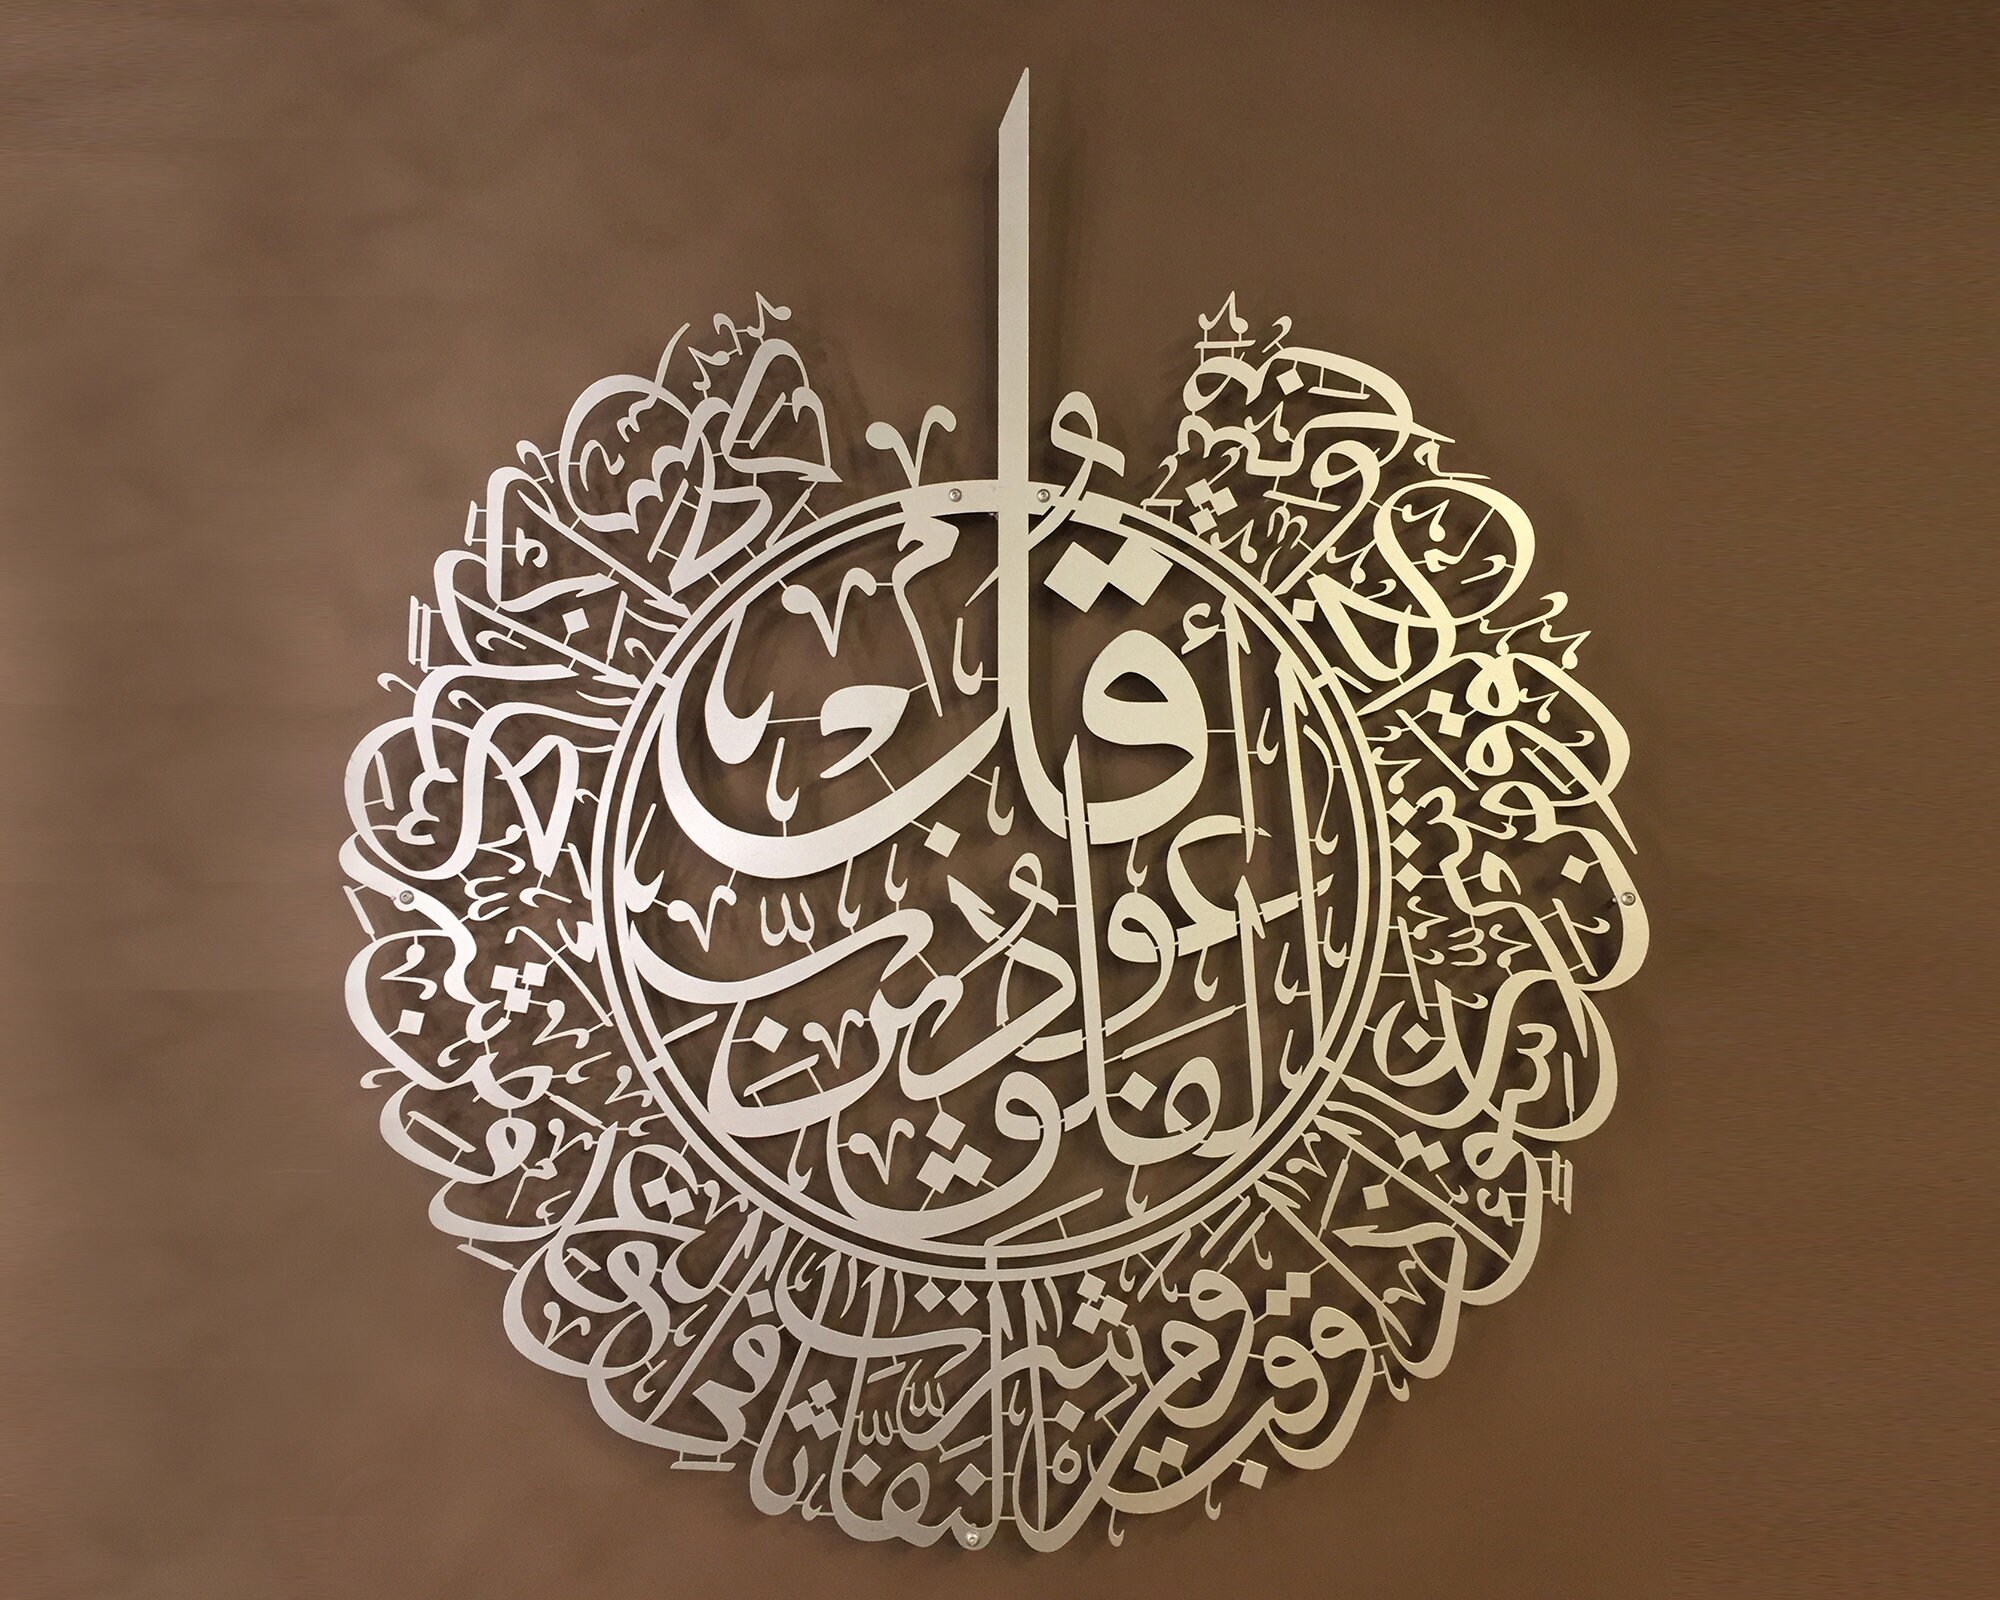 Wanddekoration Anhänger arabisch Surah Al Falaq islamische Deko Bild  goldfarbig